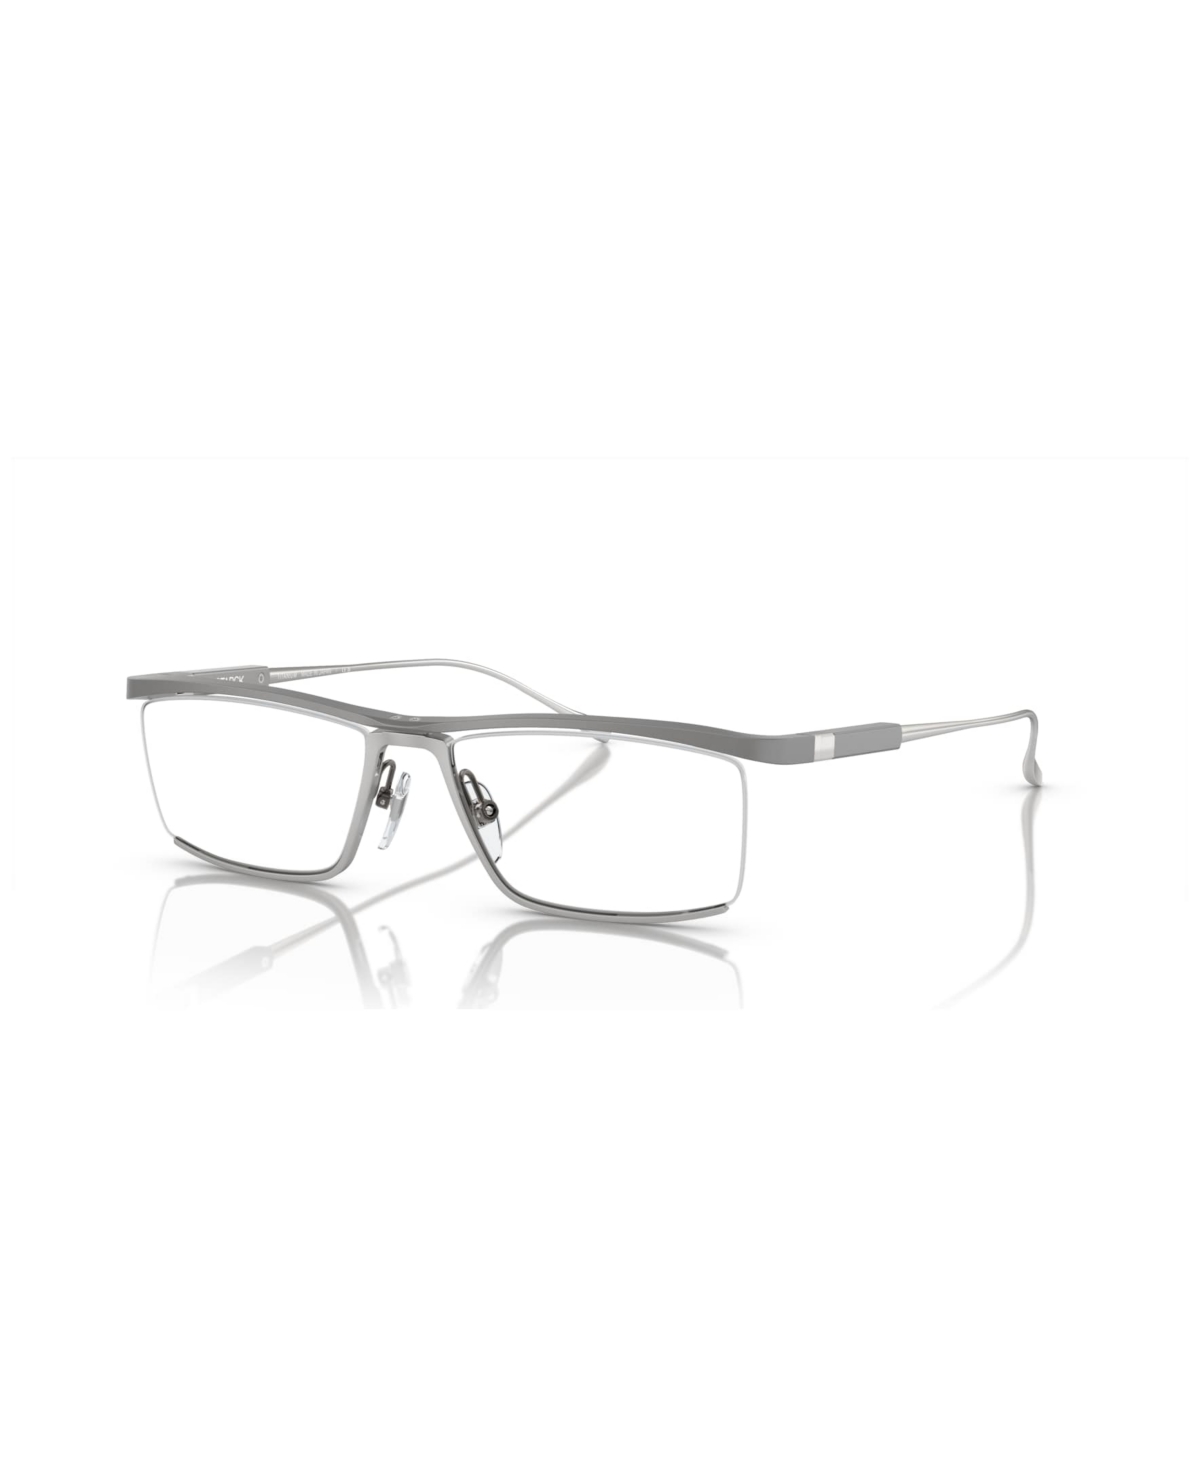 Men's Eyeglasses, SH2083T - Matte Gray, Gray